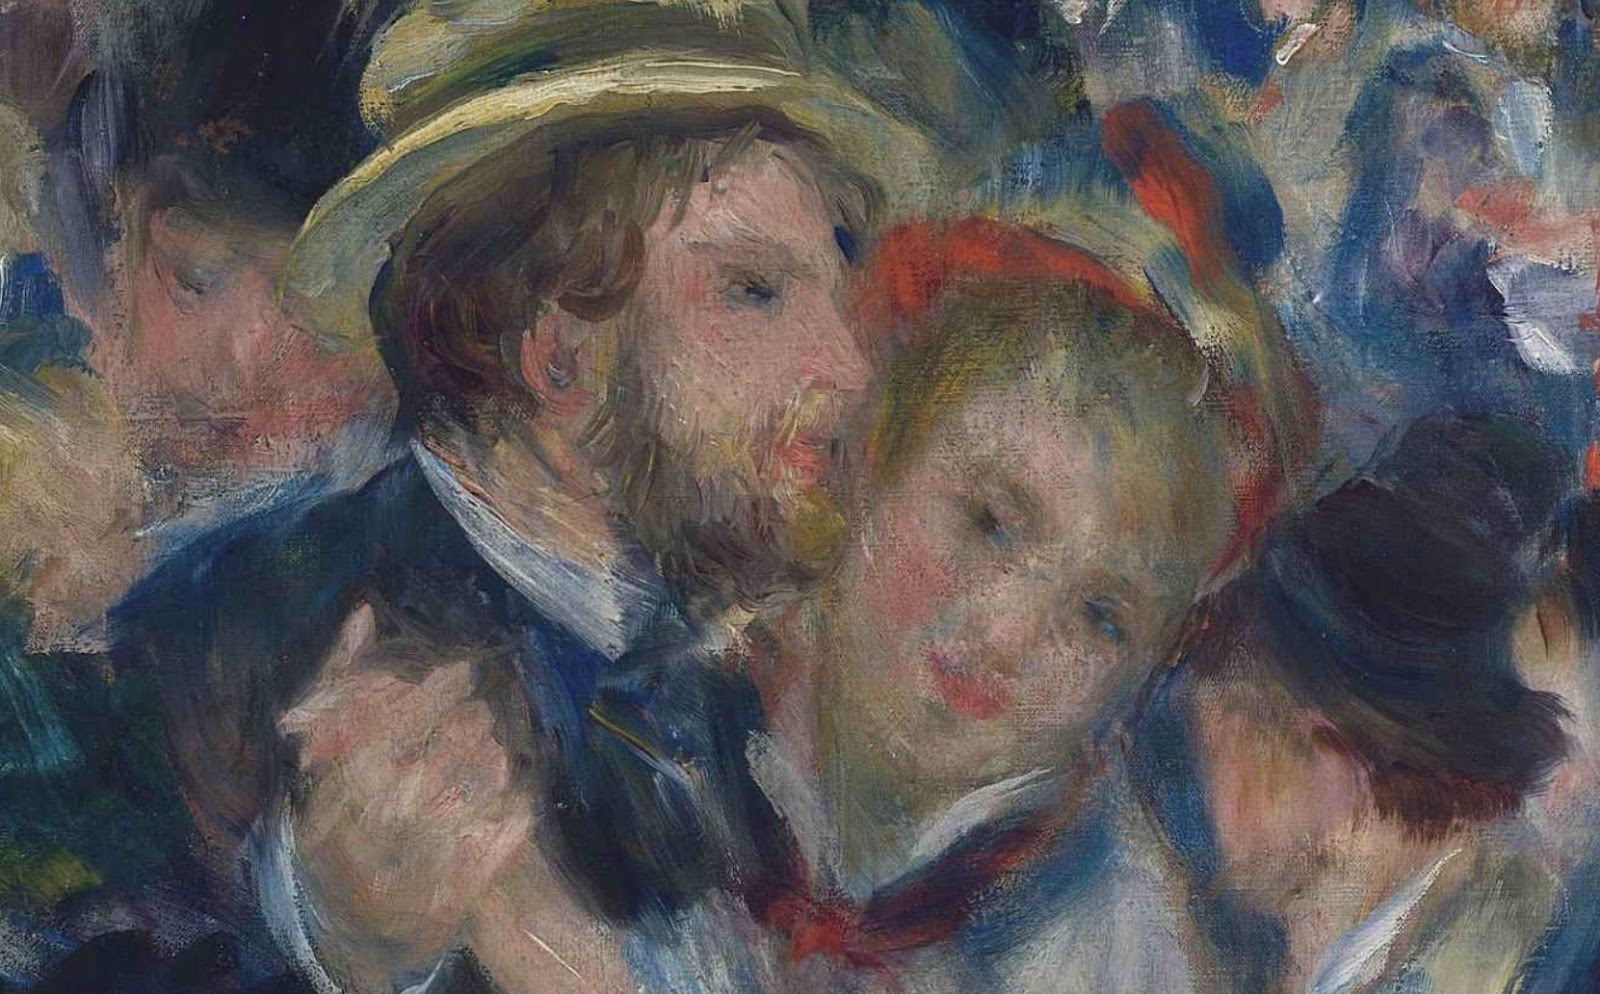 Pierre+Auguste+Renoir-1841-1-19 (437).JPG